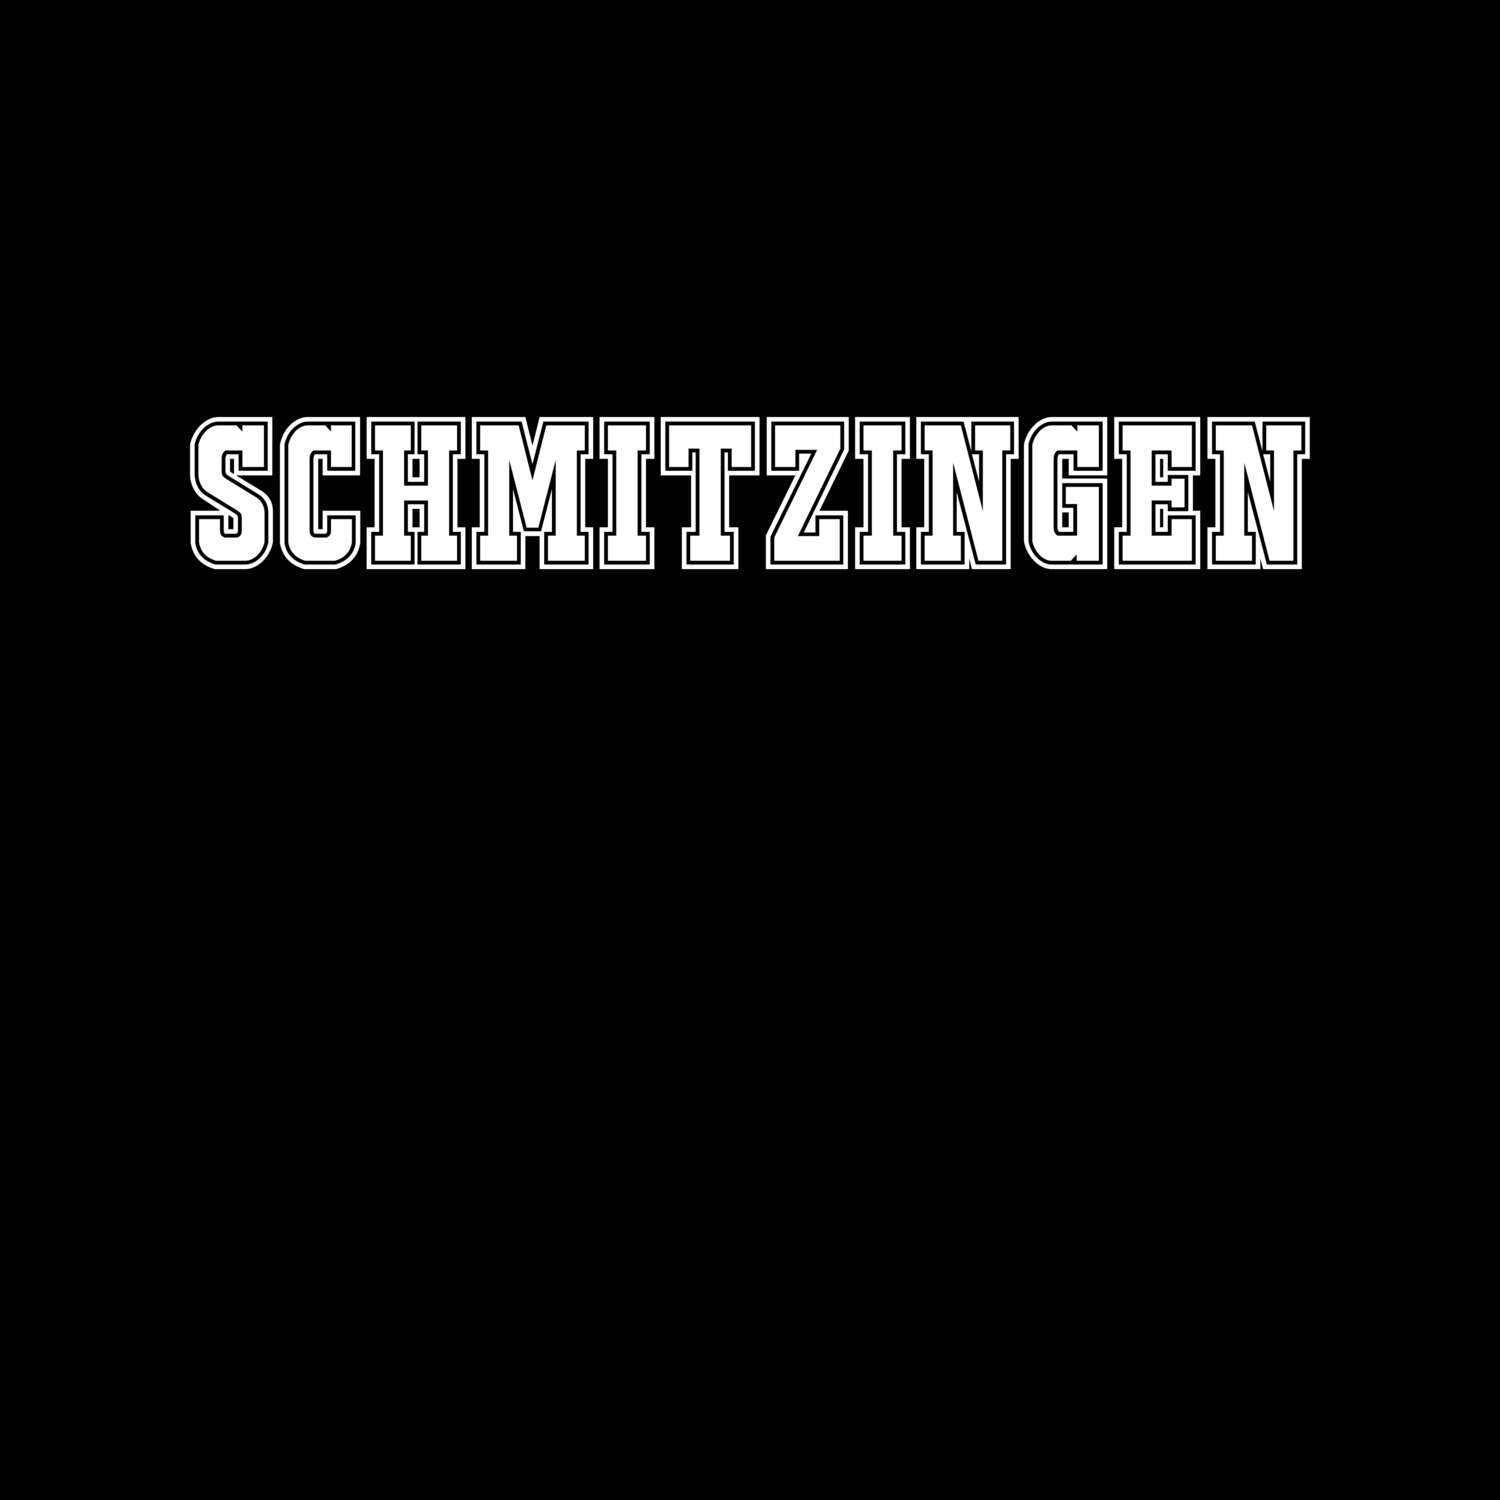 Schmitzingen T-Shirt »Classic«